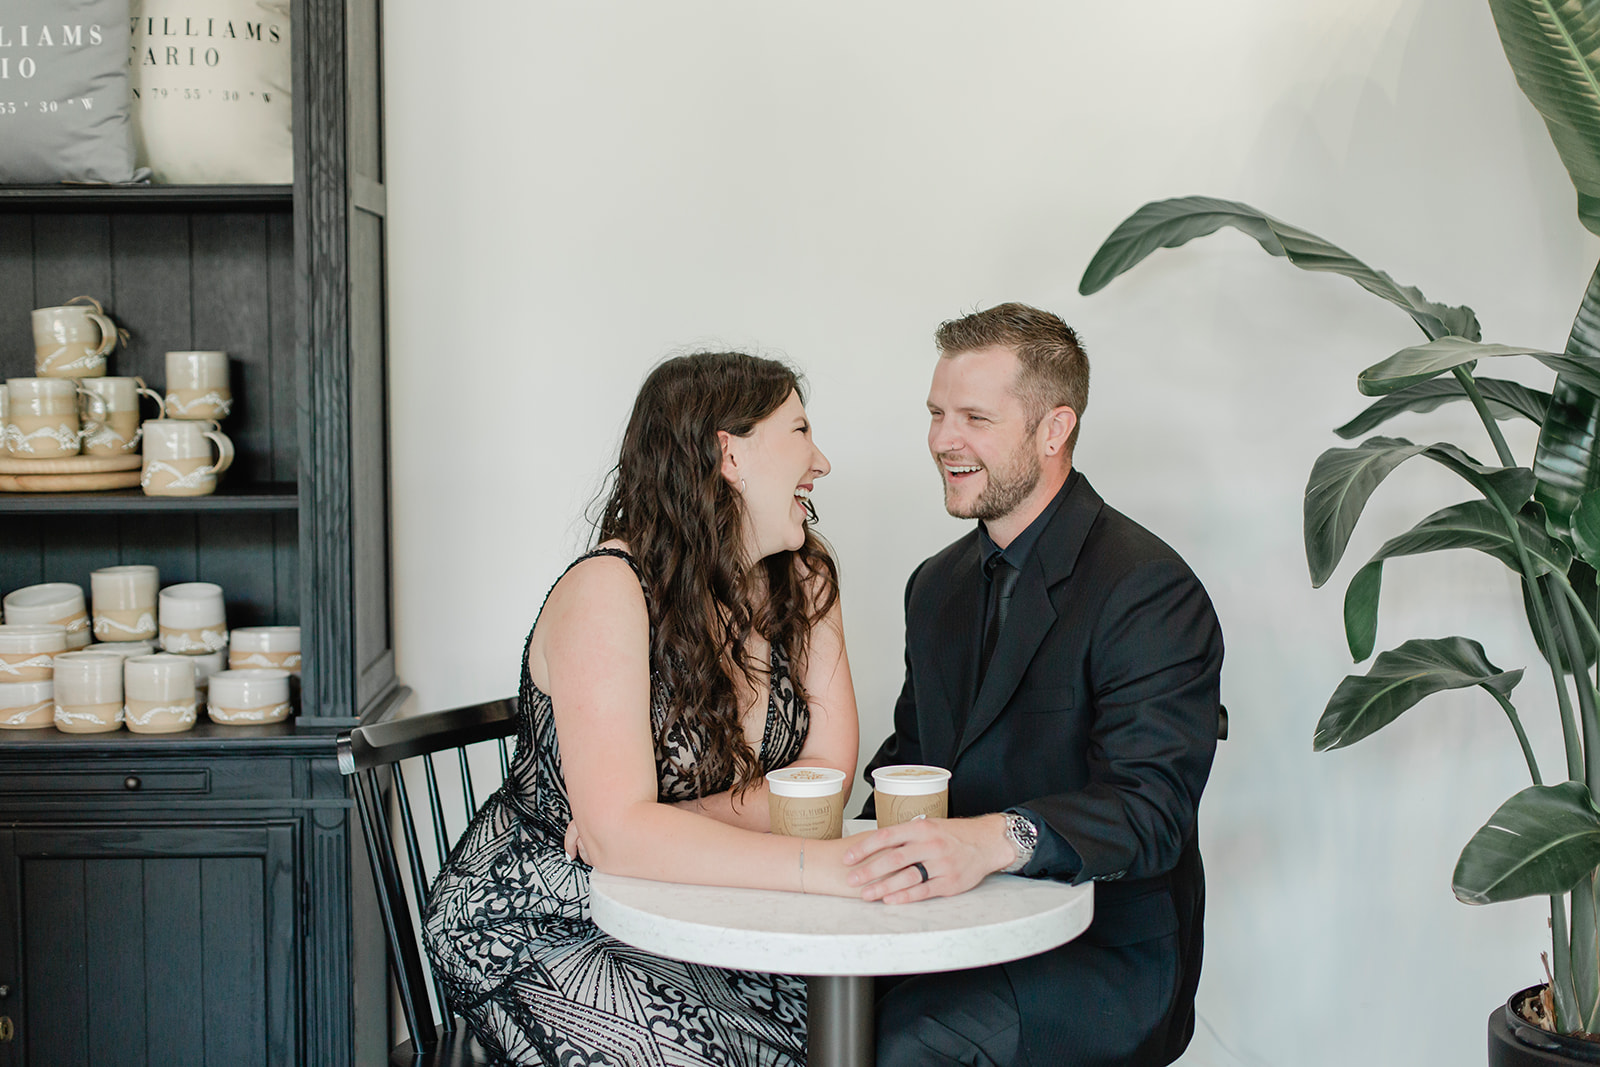 A wedding near Toronto Ontario at local coffee shop. 